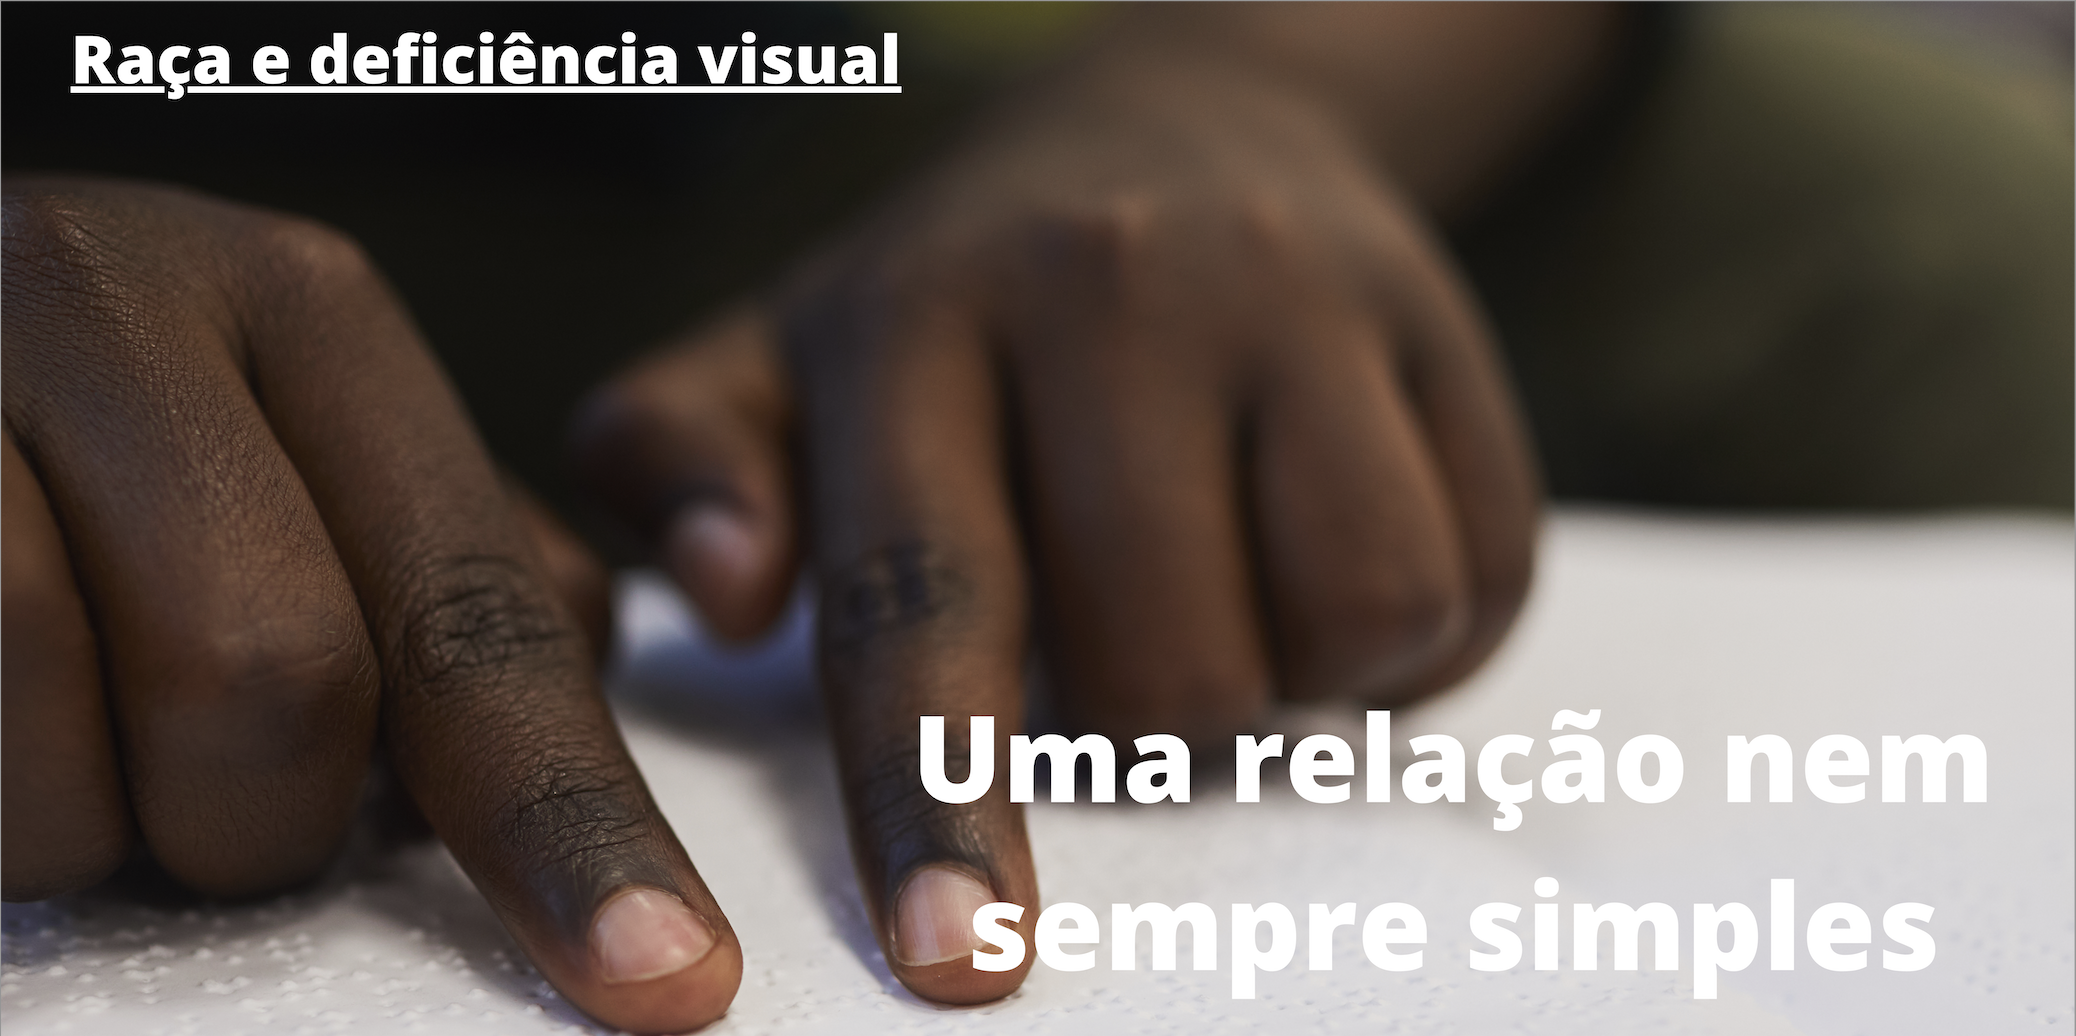 Descrição: foto de duas mãos infantis negras lendo um texto em braille.  No topo à direita, em letras brancas, lê-se: "Raça e deficiência visual"; abaixo, à direita, também em letras brancas: "Uma relação nem sempre simples".